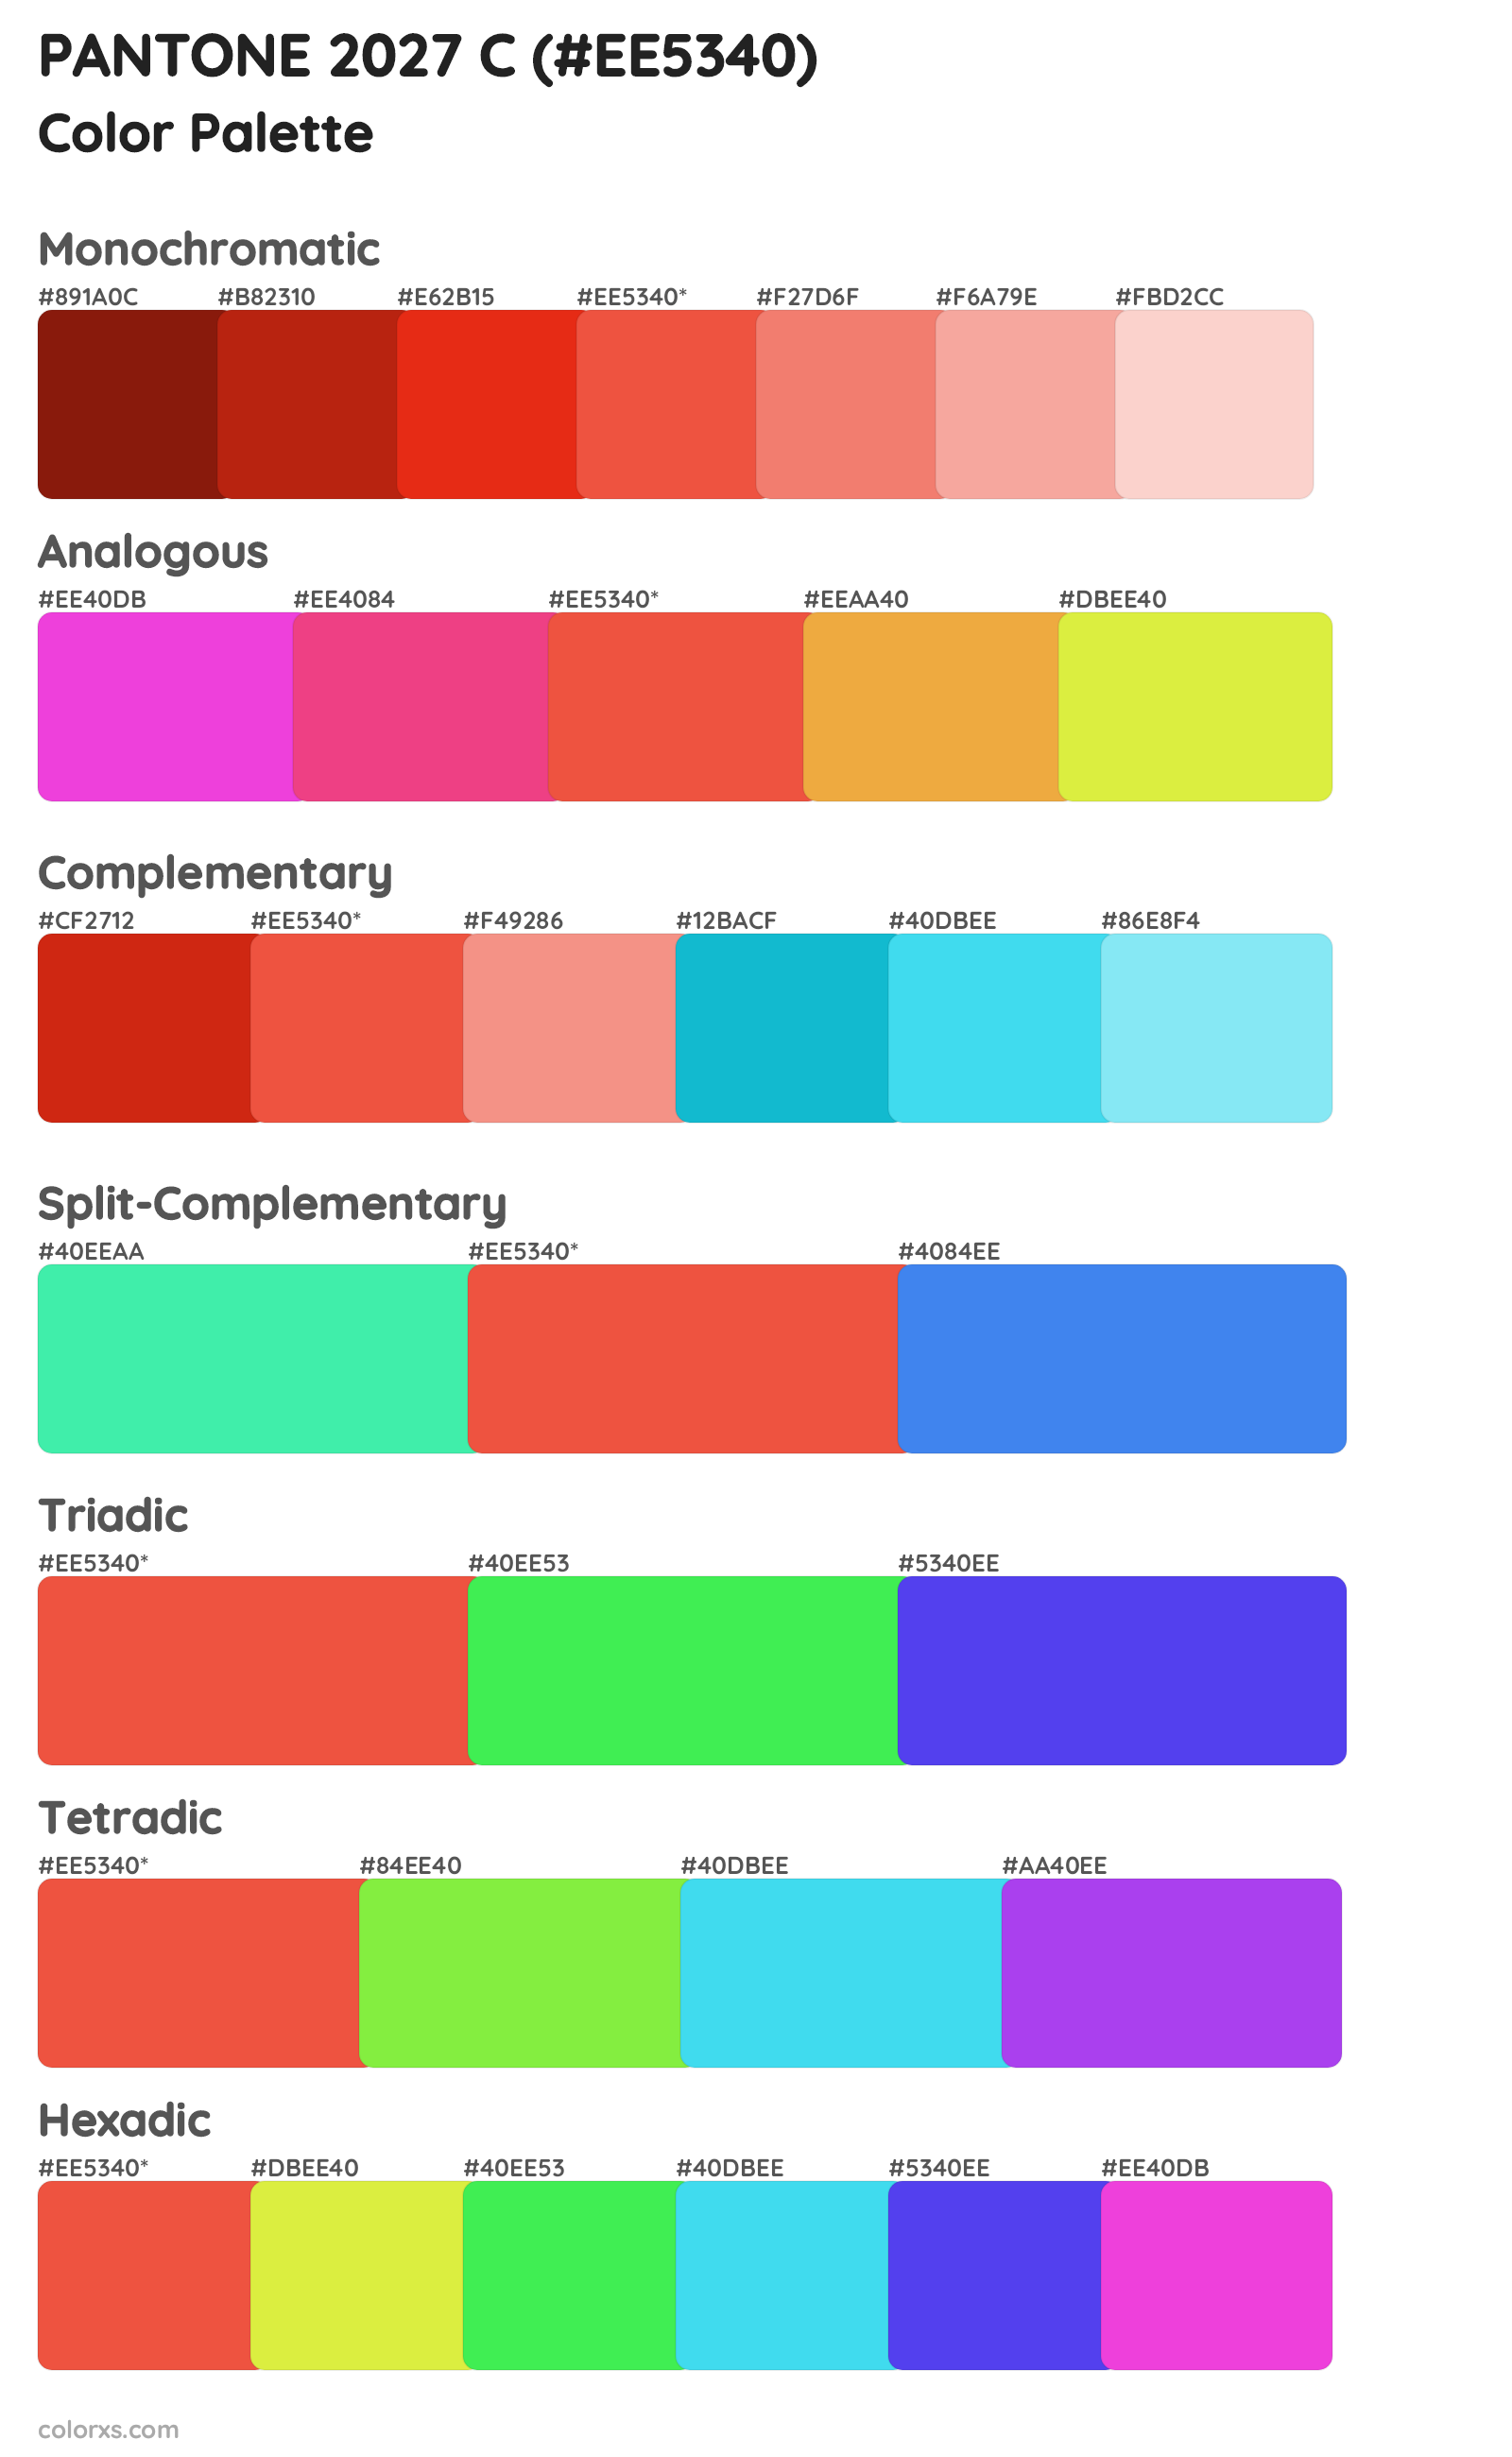 PANTONE 2027 C Color Scheme Palettes